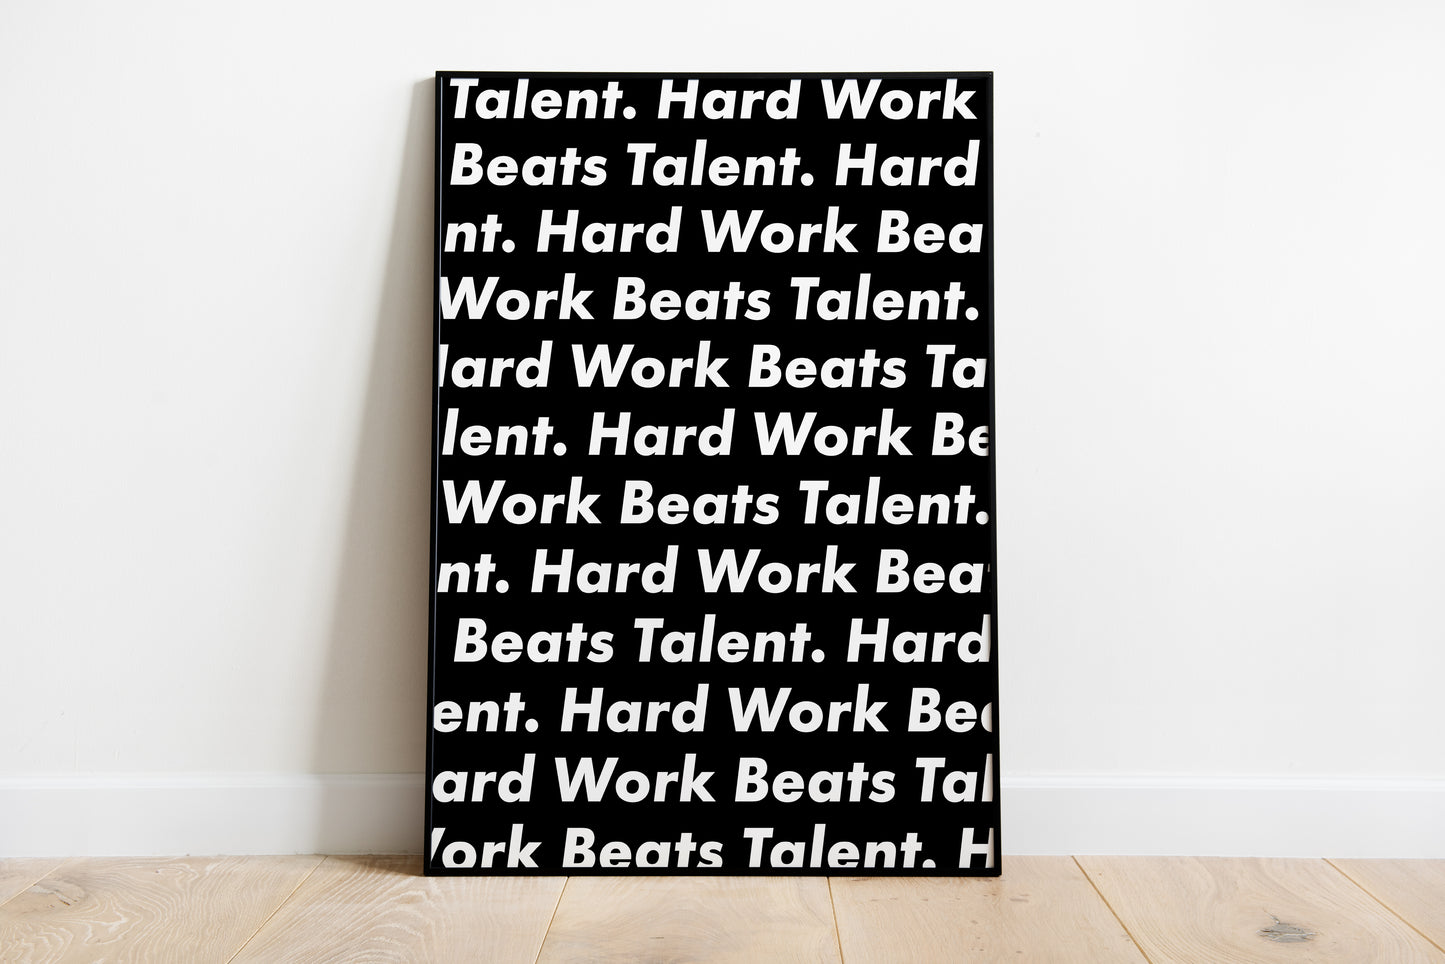 Hard Work Beats Talent Black